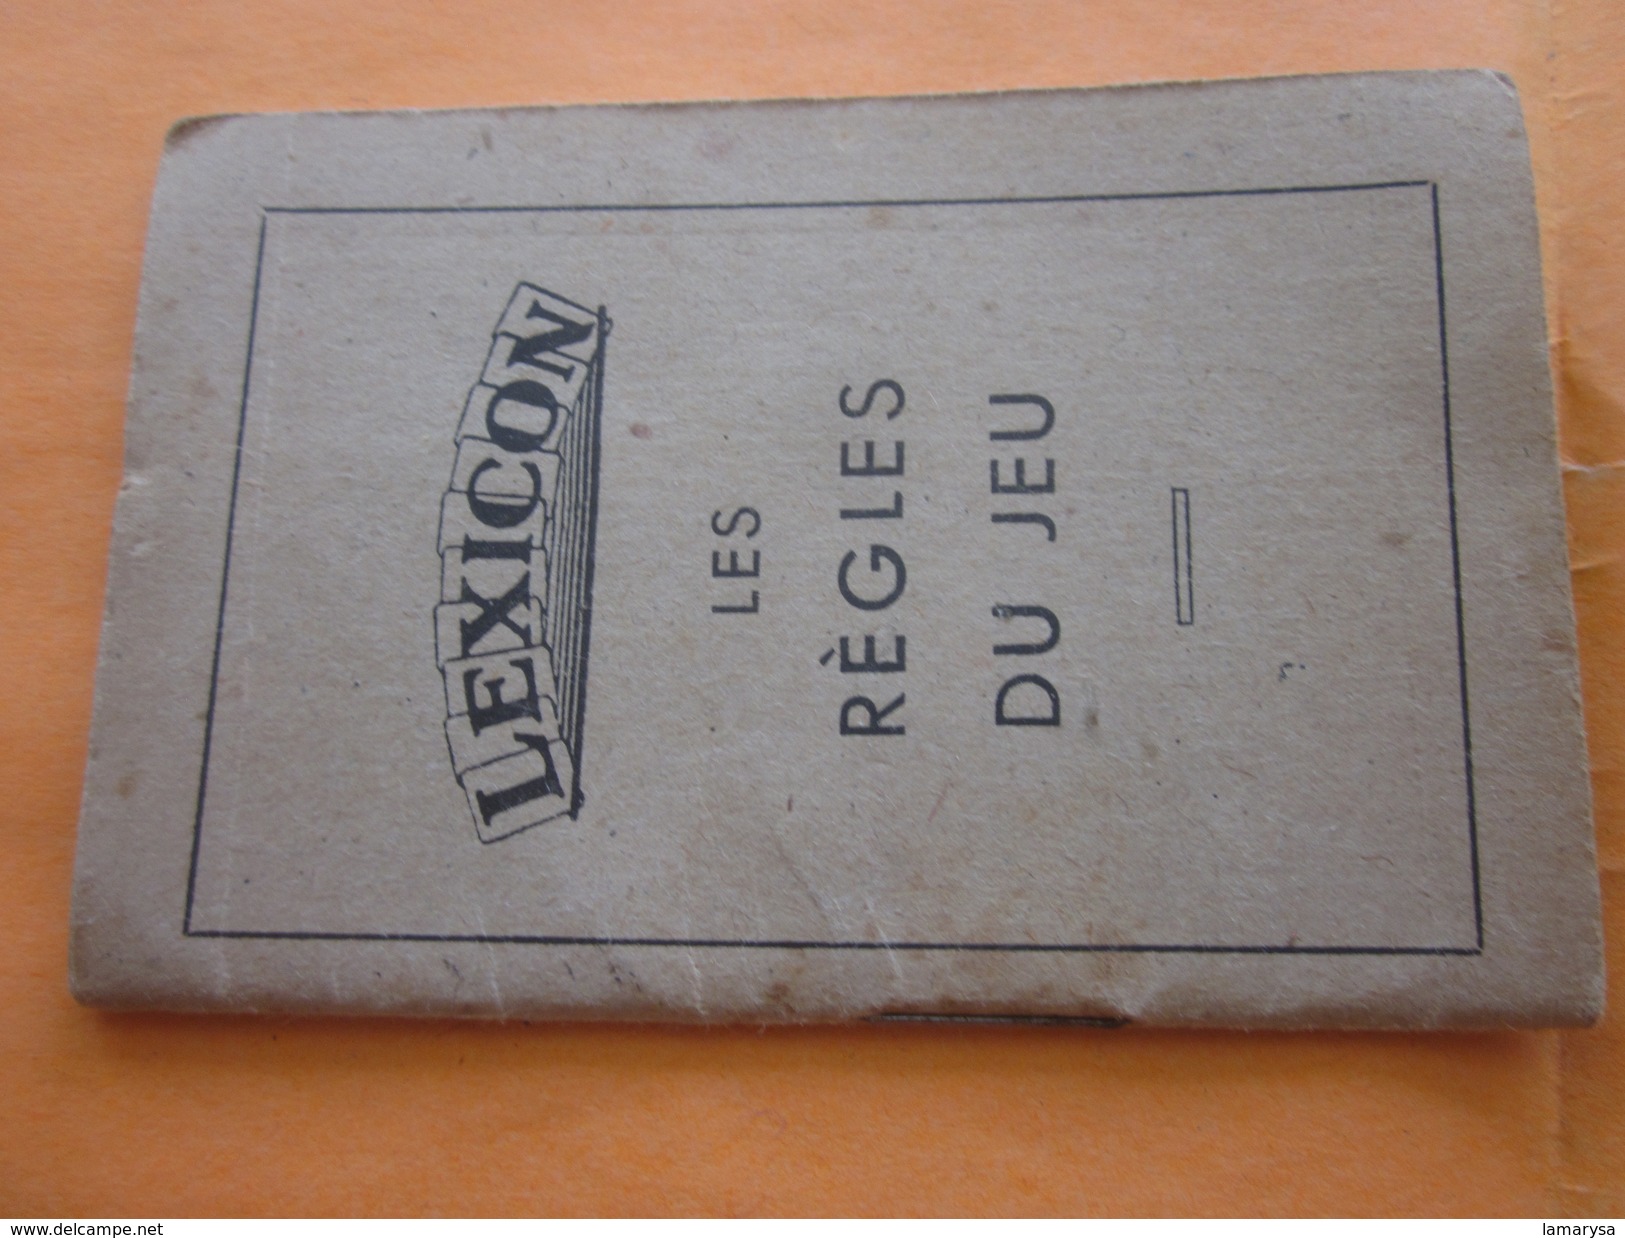 Cartes Jeu de Lettres LEXICON Miro 1937 avec carnet de la Règle du Jeu et Boite d'origine(complet 51+3 cartes)